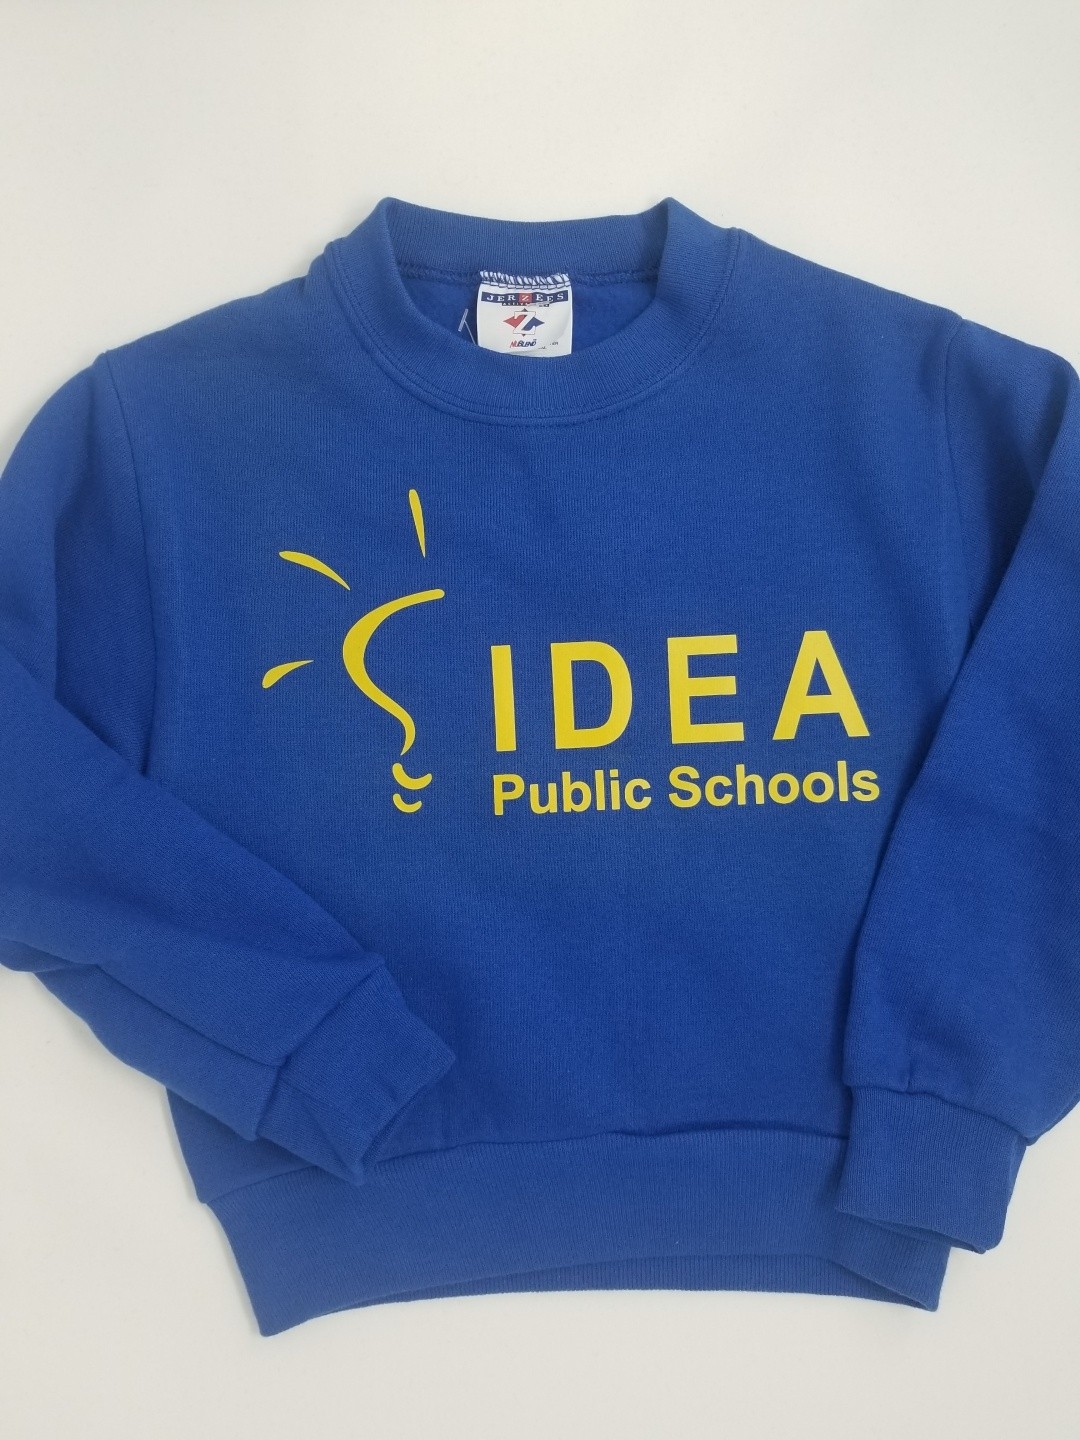 Sweatshirt for IDEA Public Schools